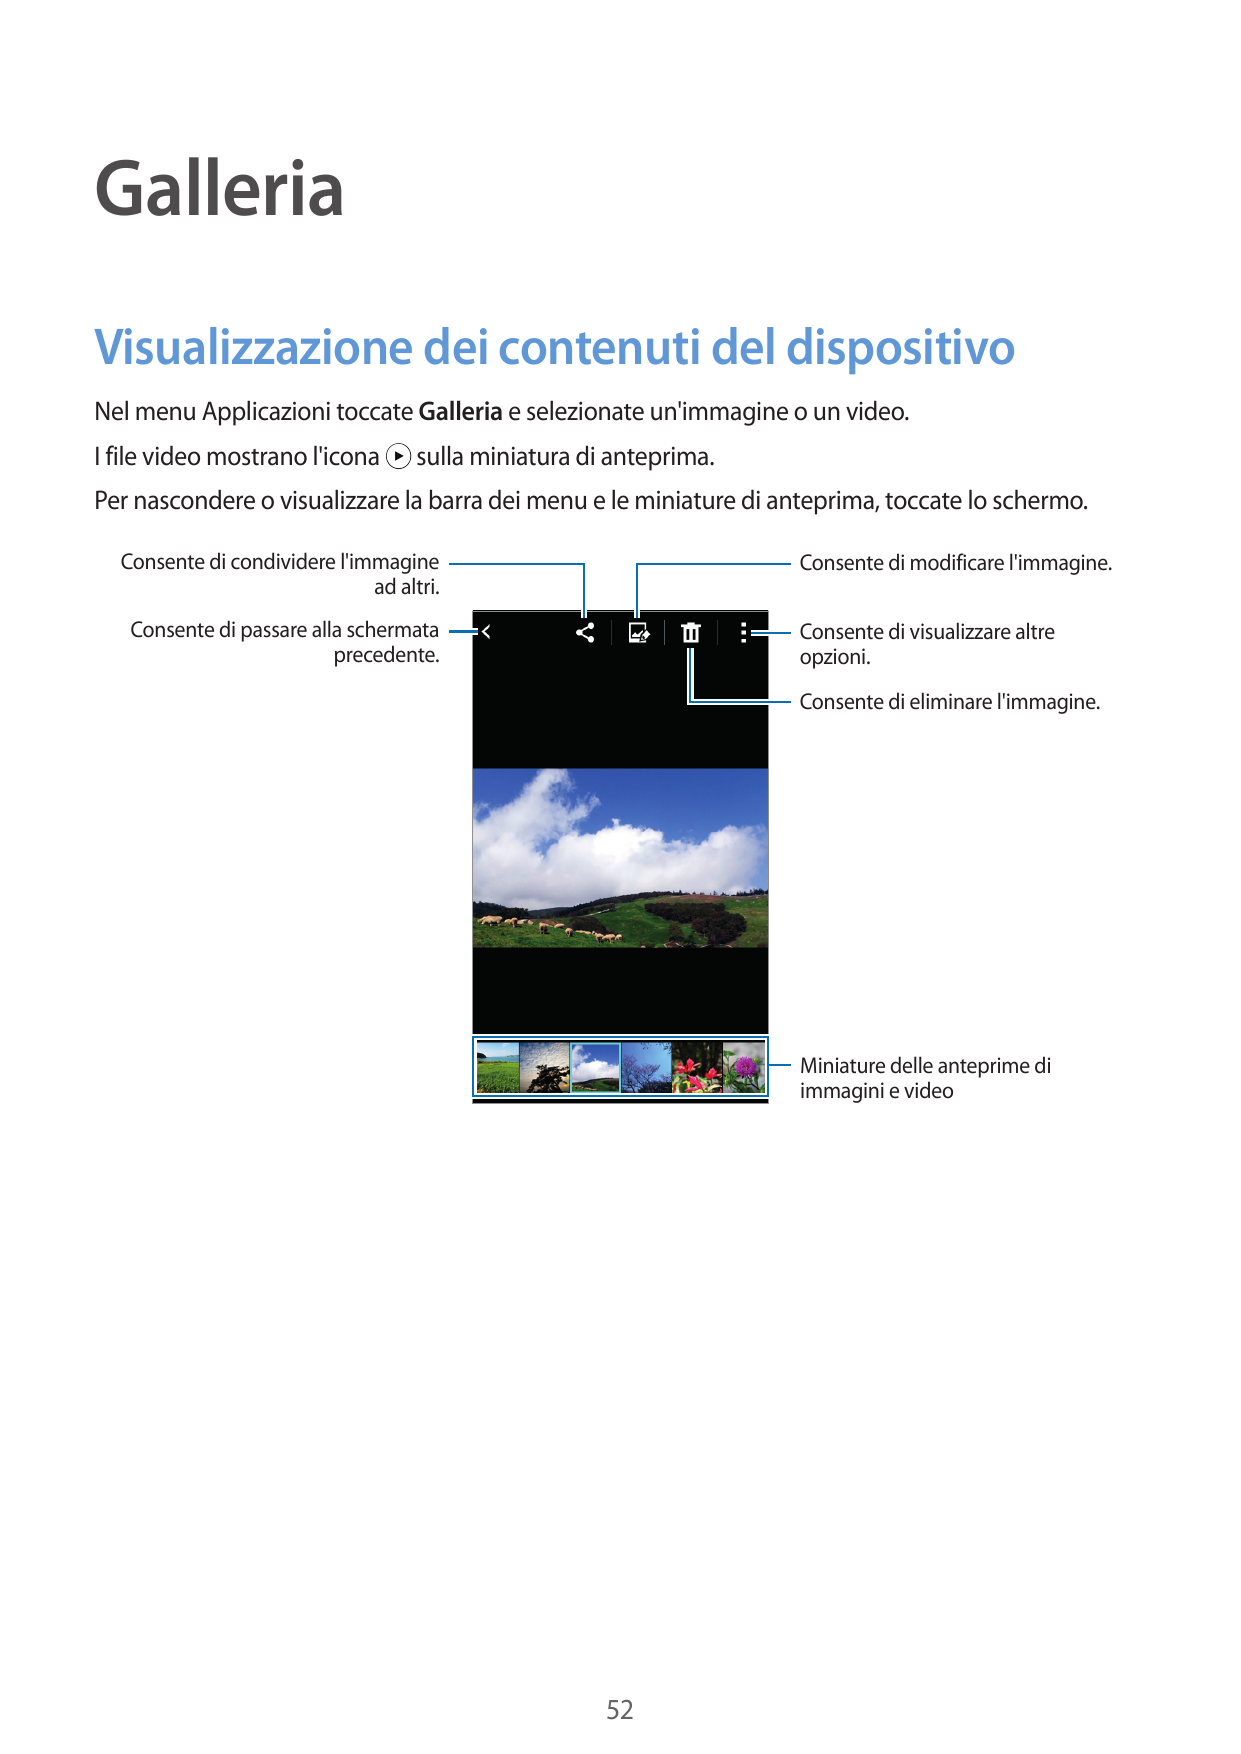 GalleriaVisualizzazione dei contenuti del dispositivoNel menu Applicazioni toccate Galleria e selezionate un'immagine o un video